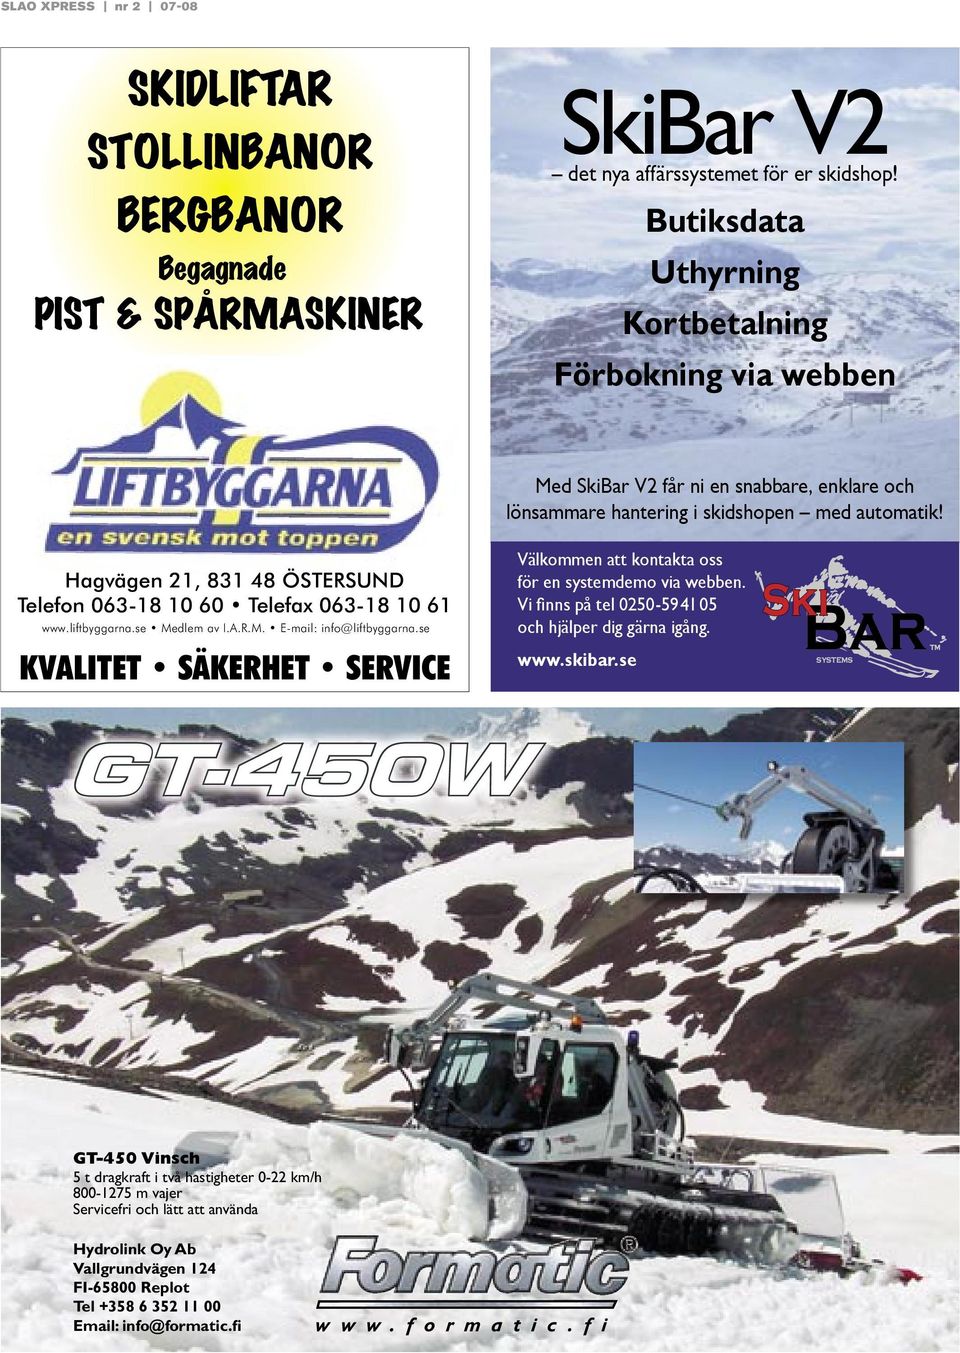 automatik! Hagvägen 21, 831 48 ÖSTERSUND Telefon 063-18 10 60 Telefax 063-18 10 61 www.liftbyggarna.se Medlem av I.A.R.M. E-mail: info@liftbyggarna.